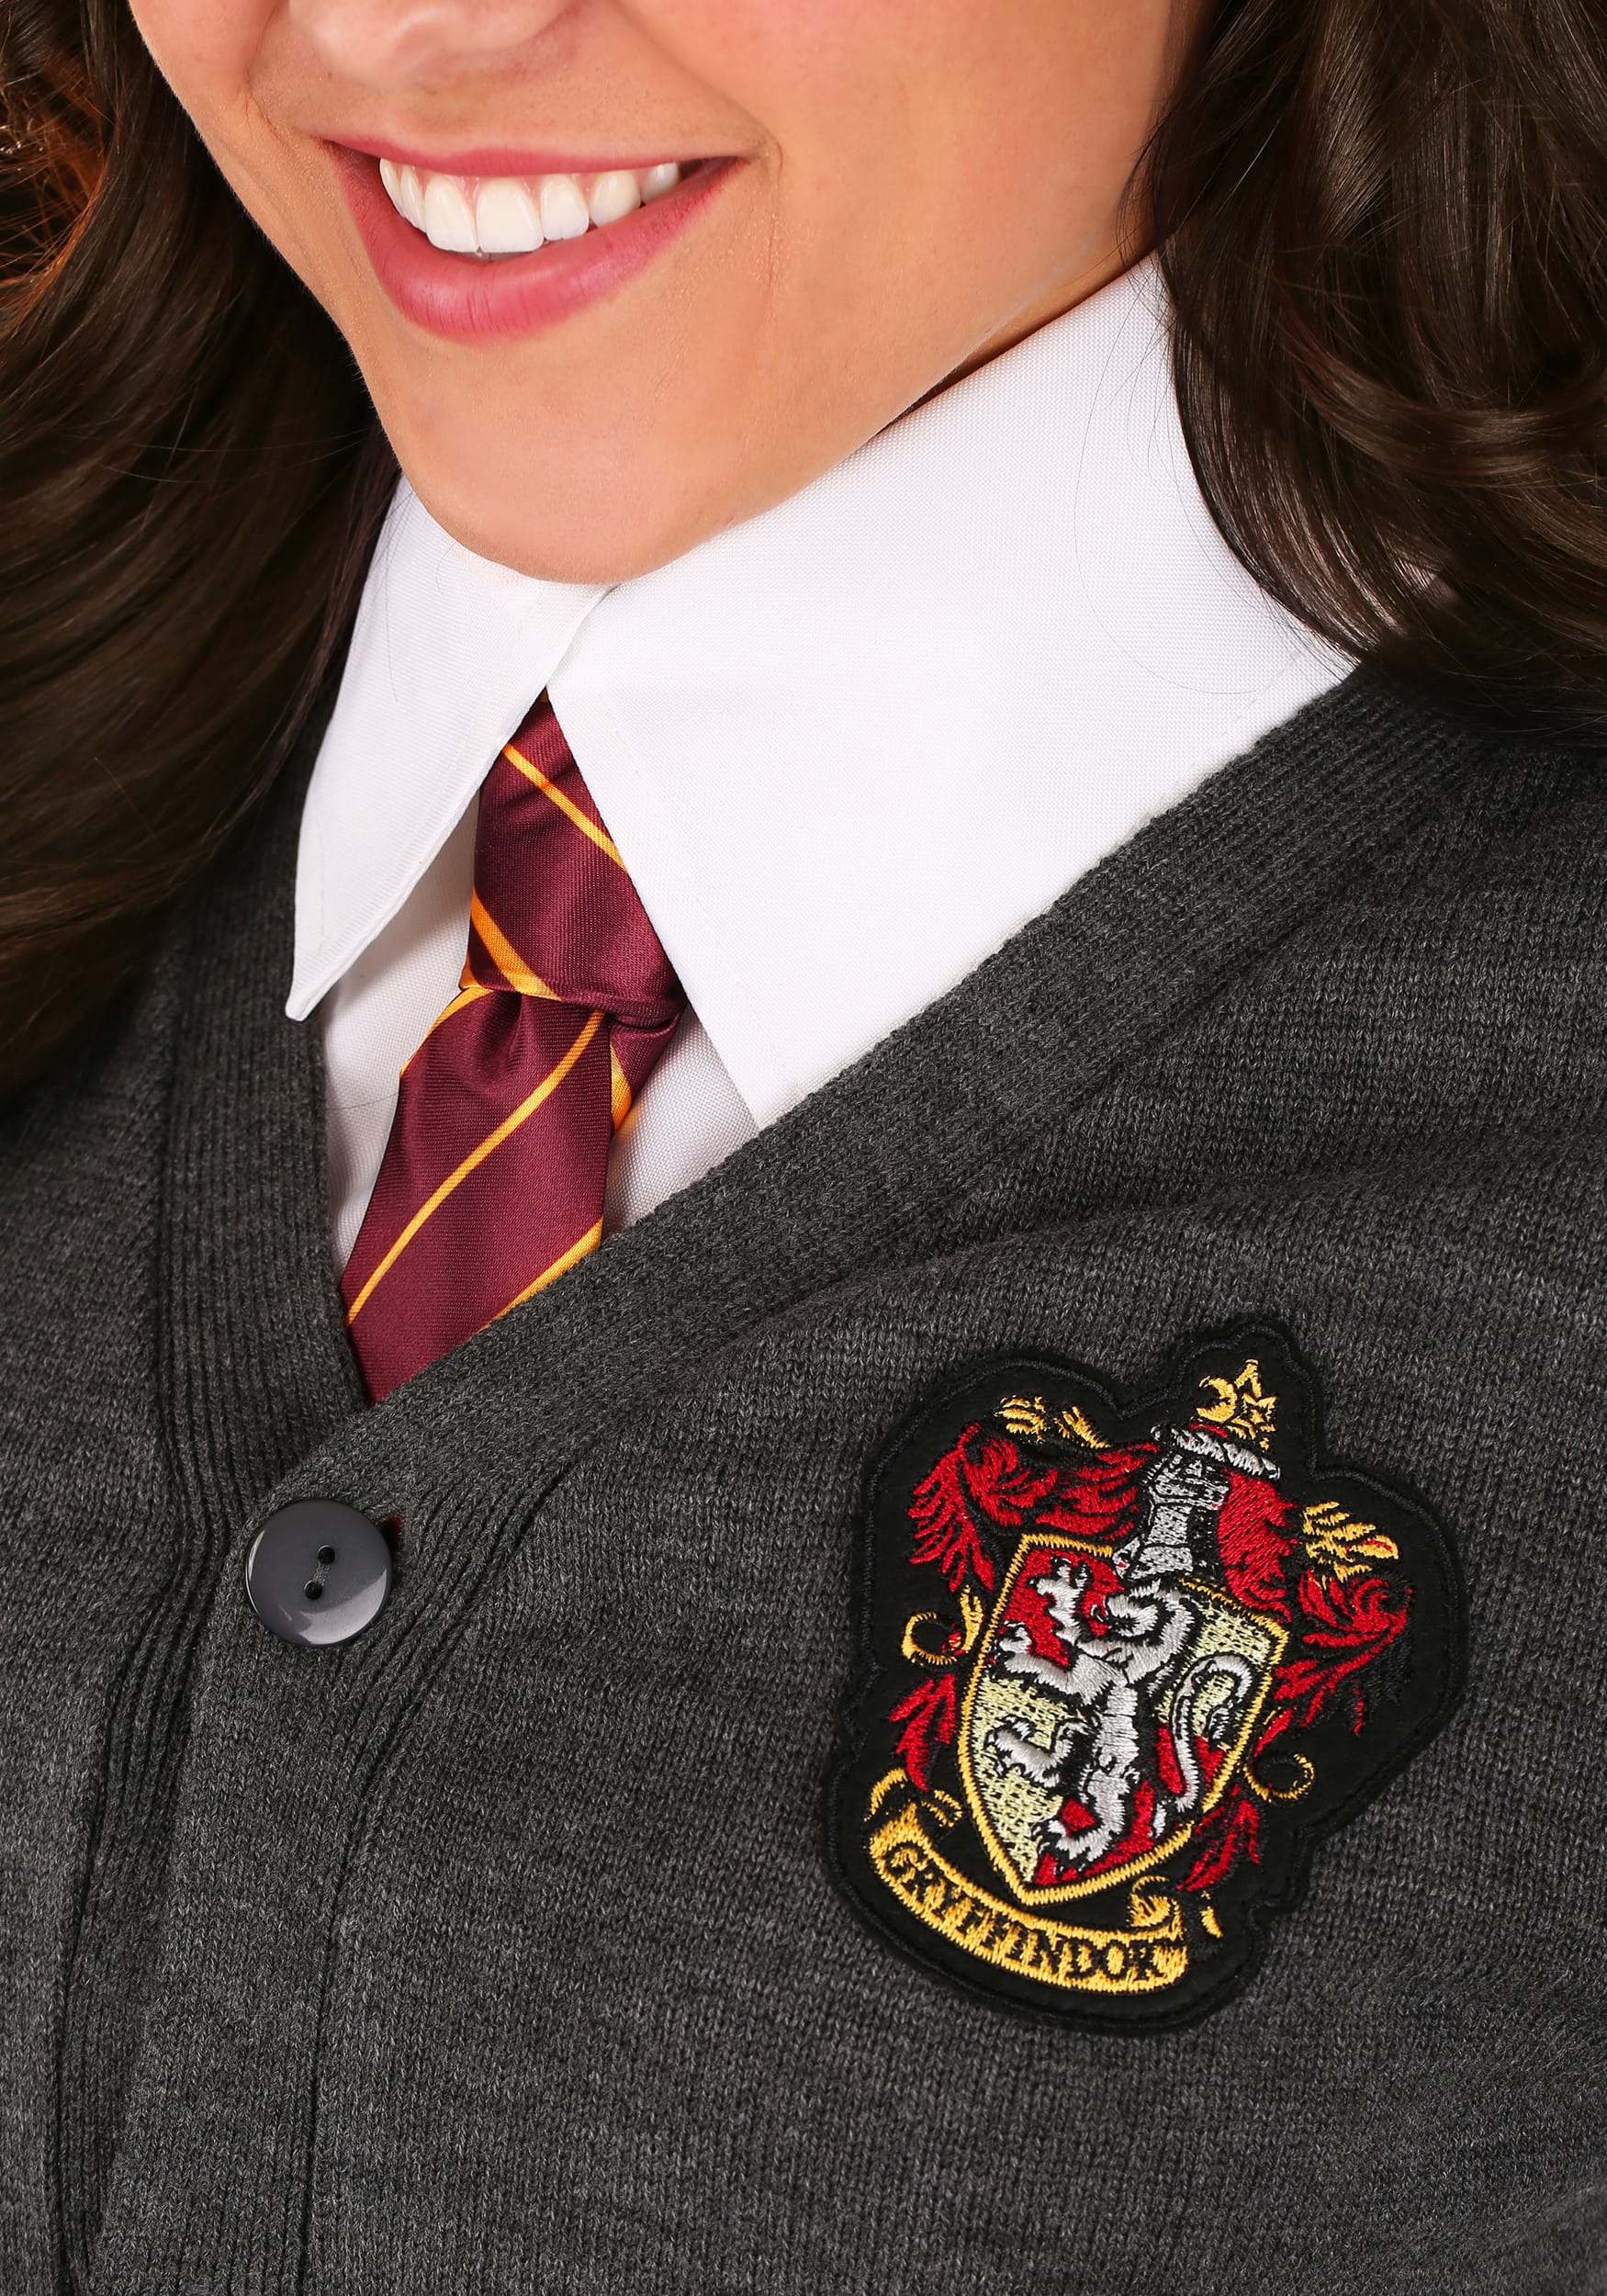 Plus Size Deluxe Harry Potter Hermione Fancy Dress Costume